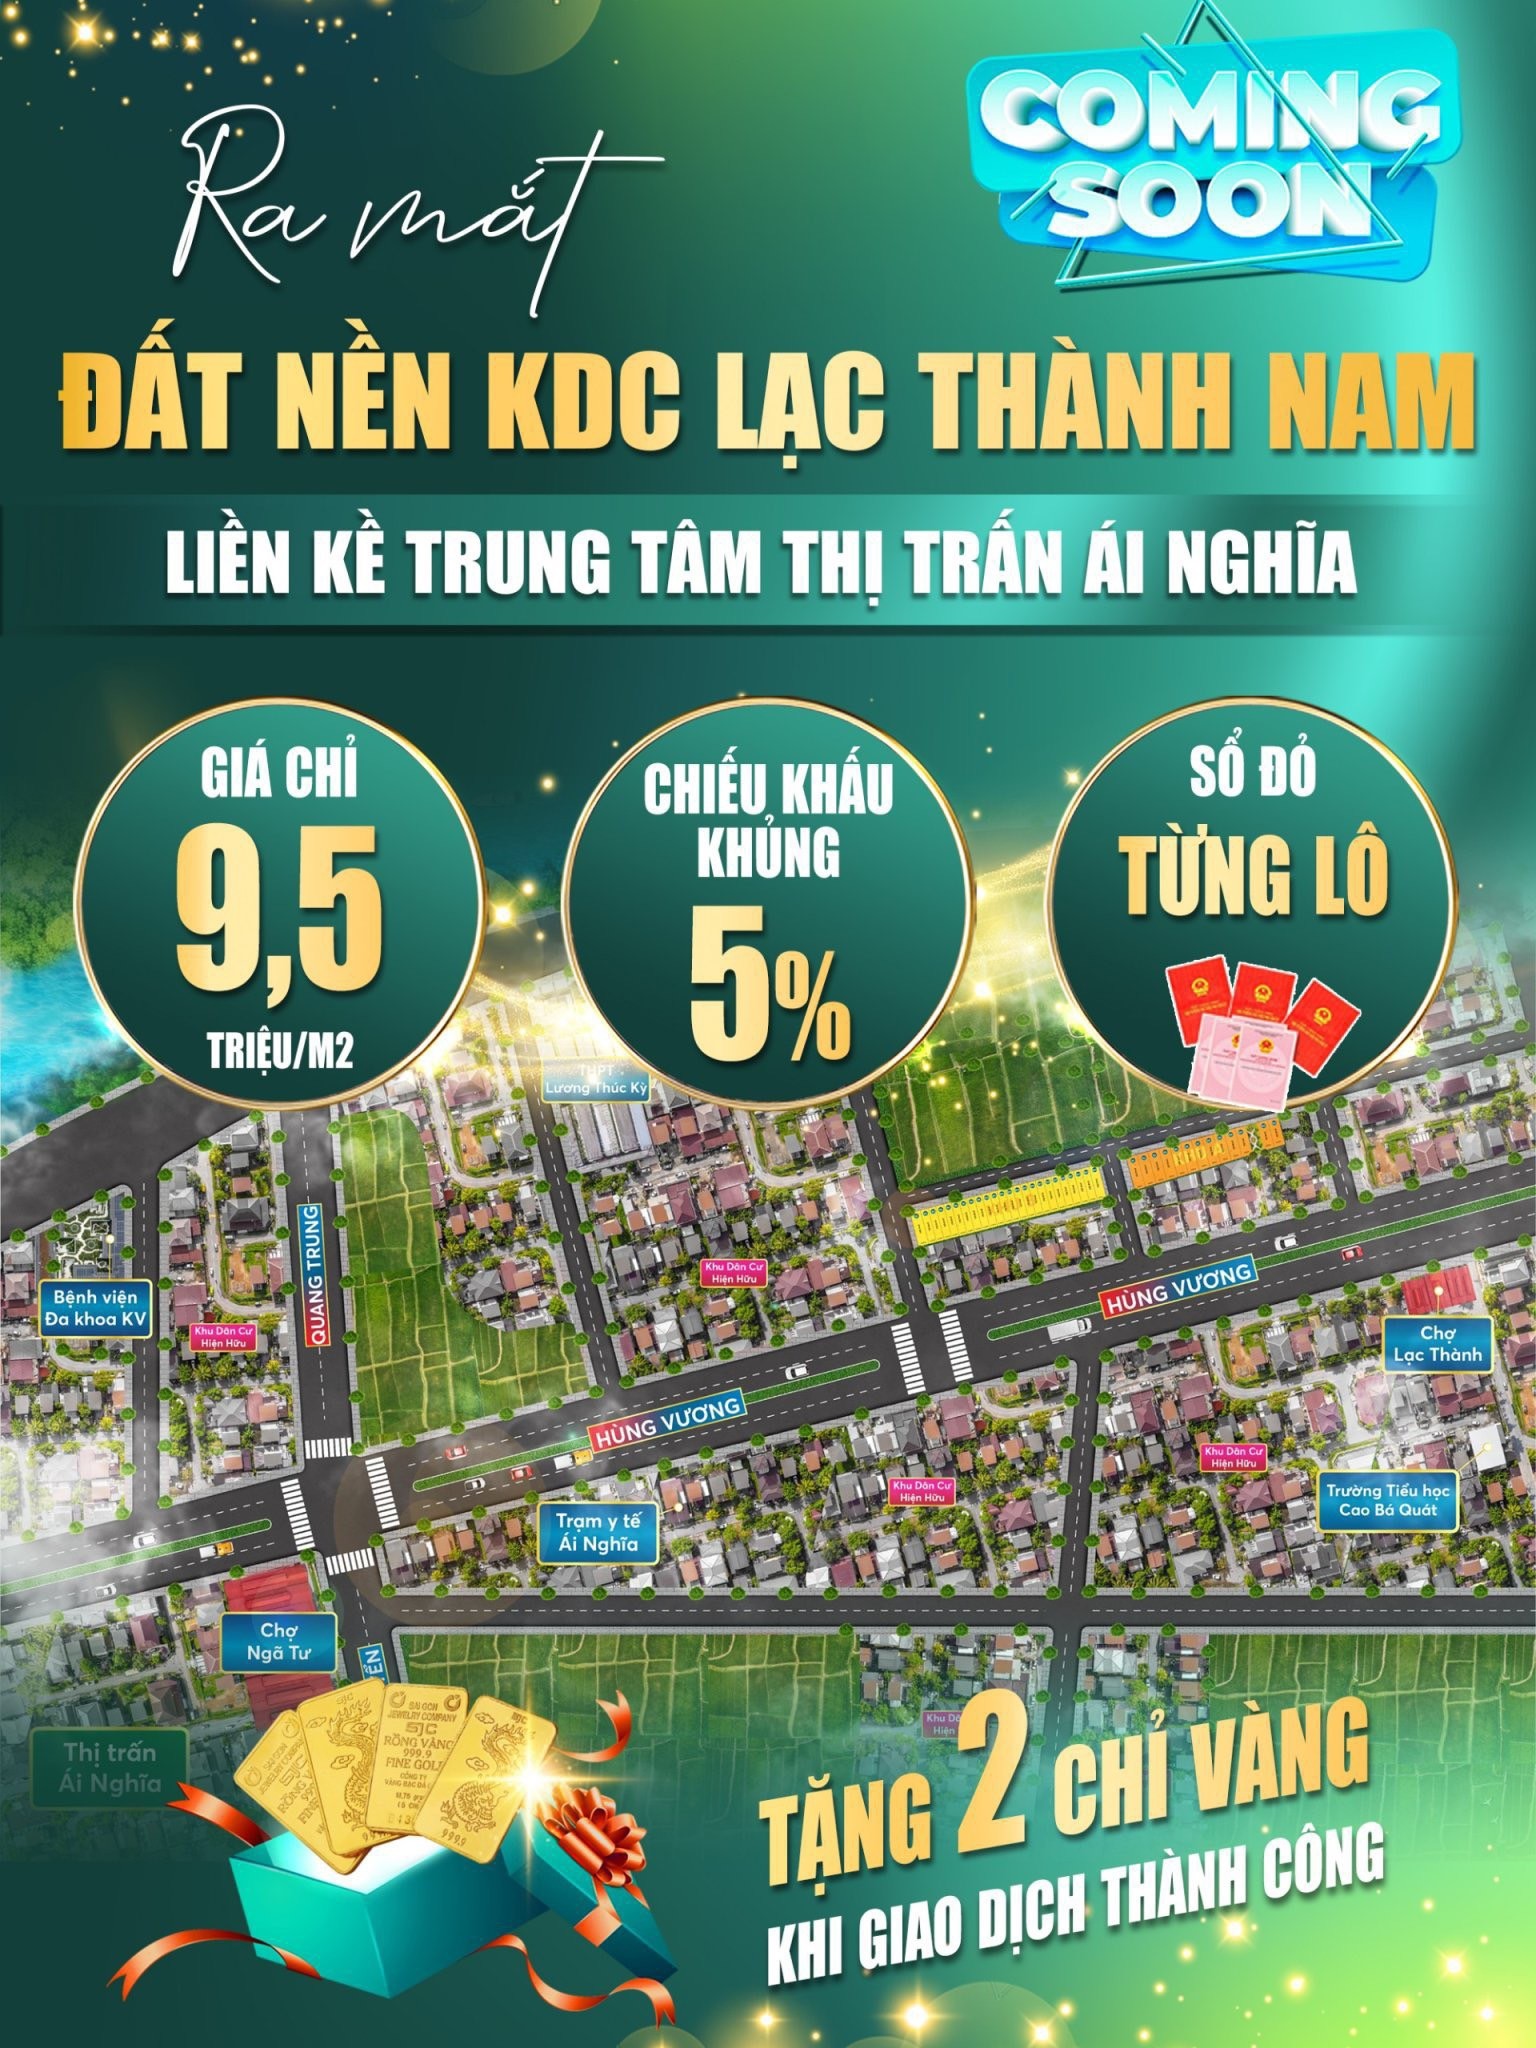 Chính thức công bố đất nền KDC Lạc Thành Nam - Quy mô hoành tráng với nhiều phần quà lớn 1